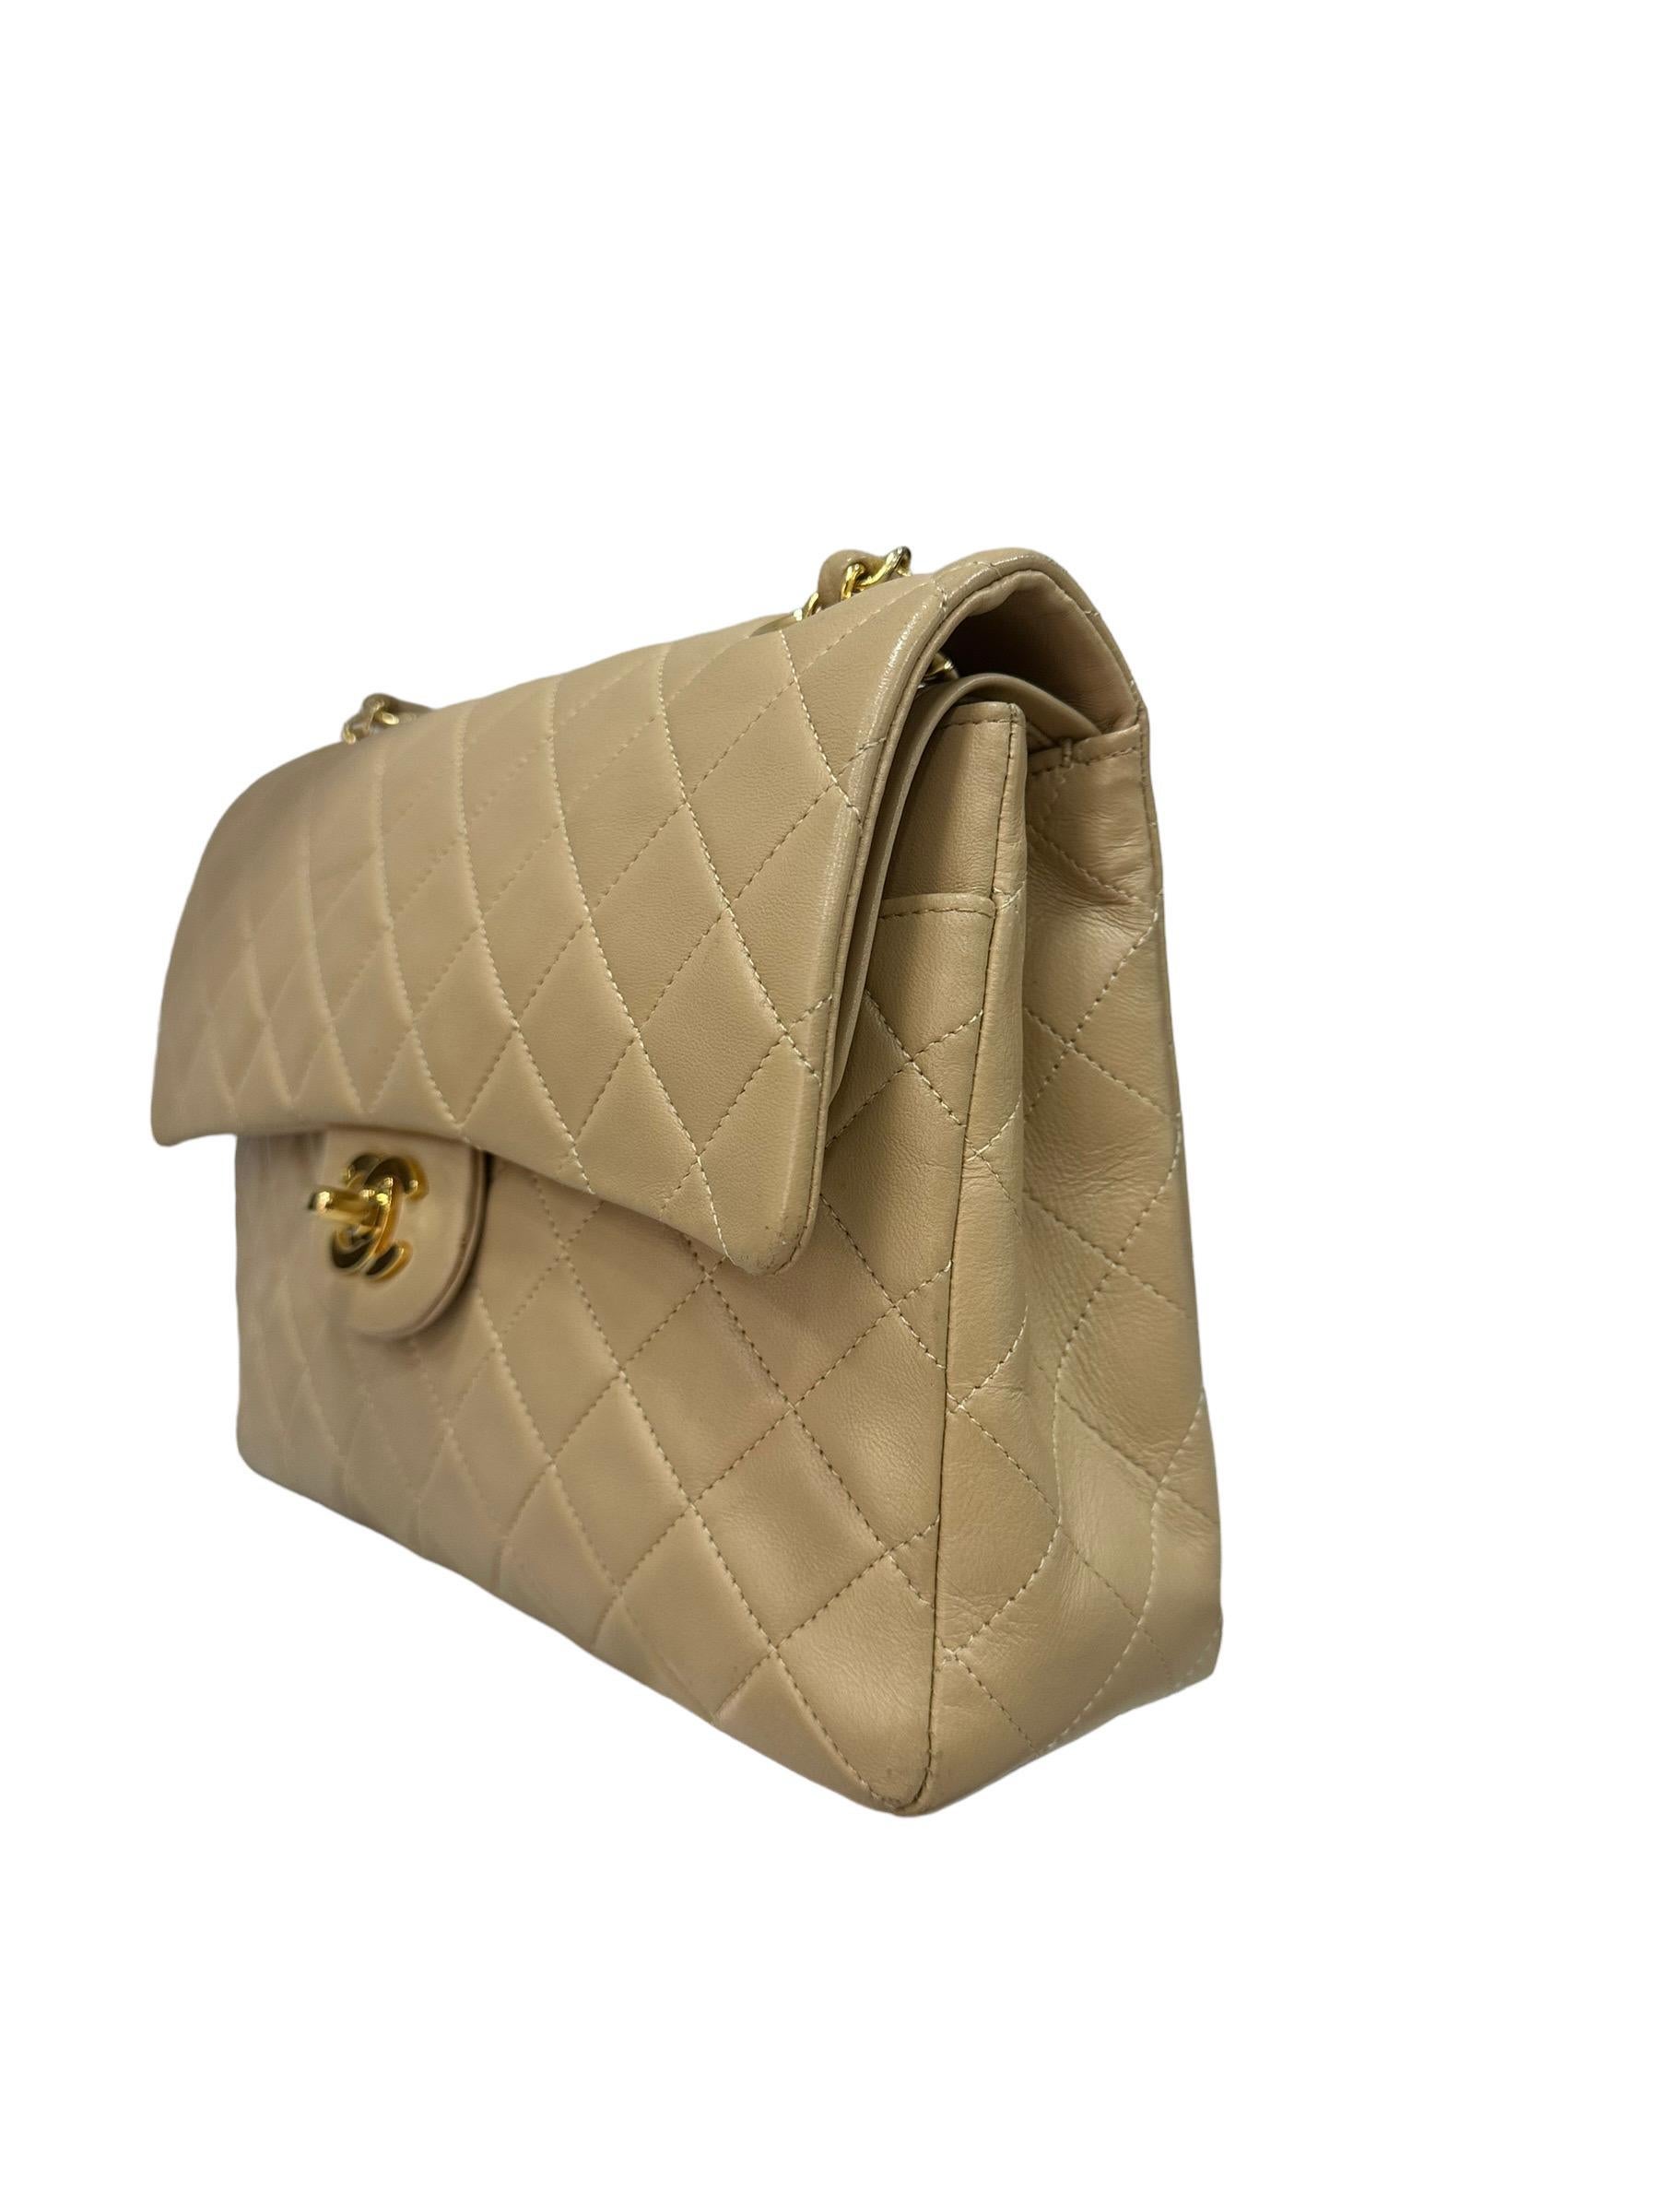 Women's ‘90 Chanel Flap Vintage Beige Leather Shoulder Bag For Sale